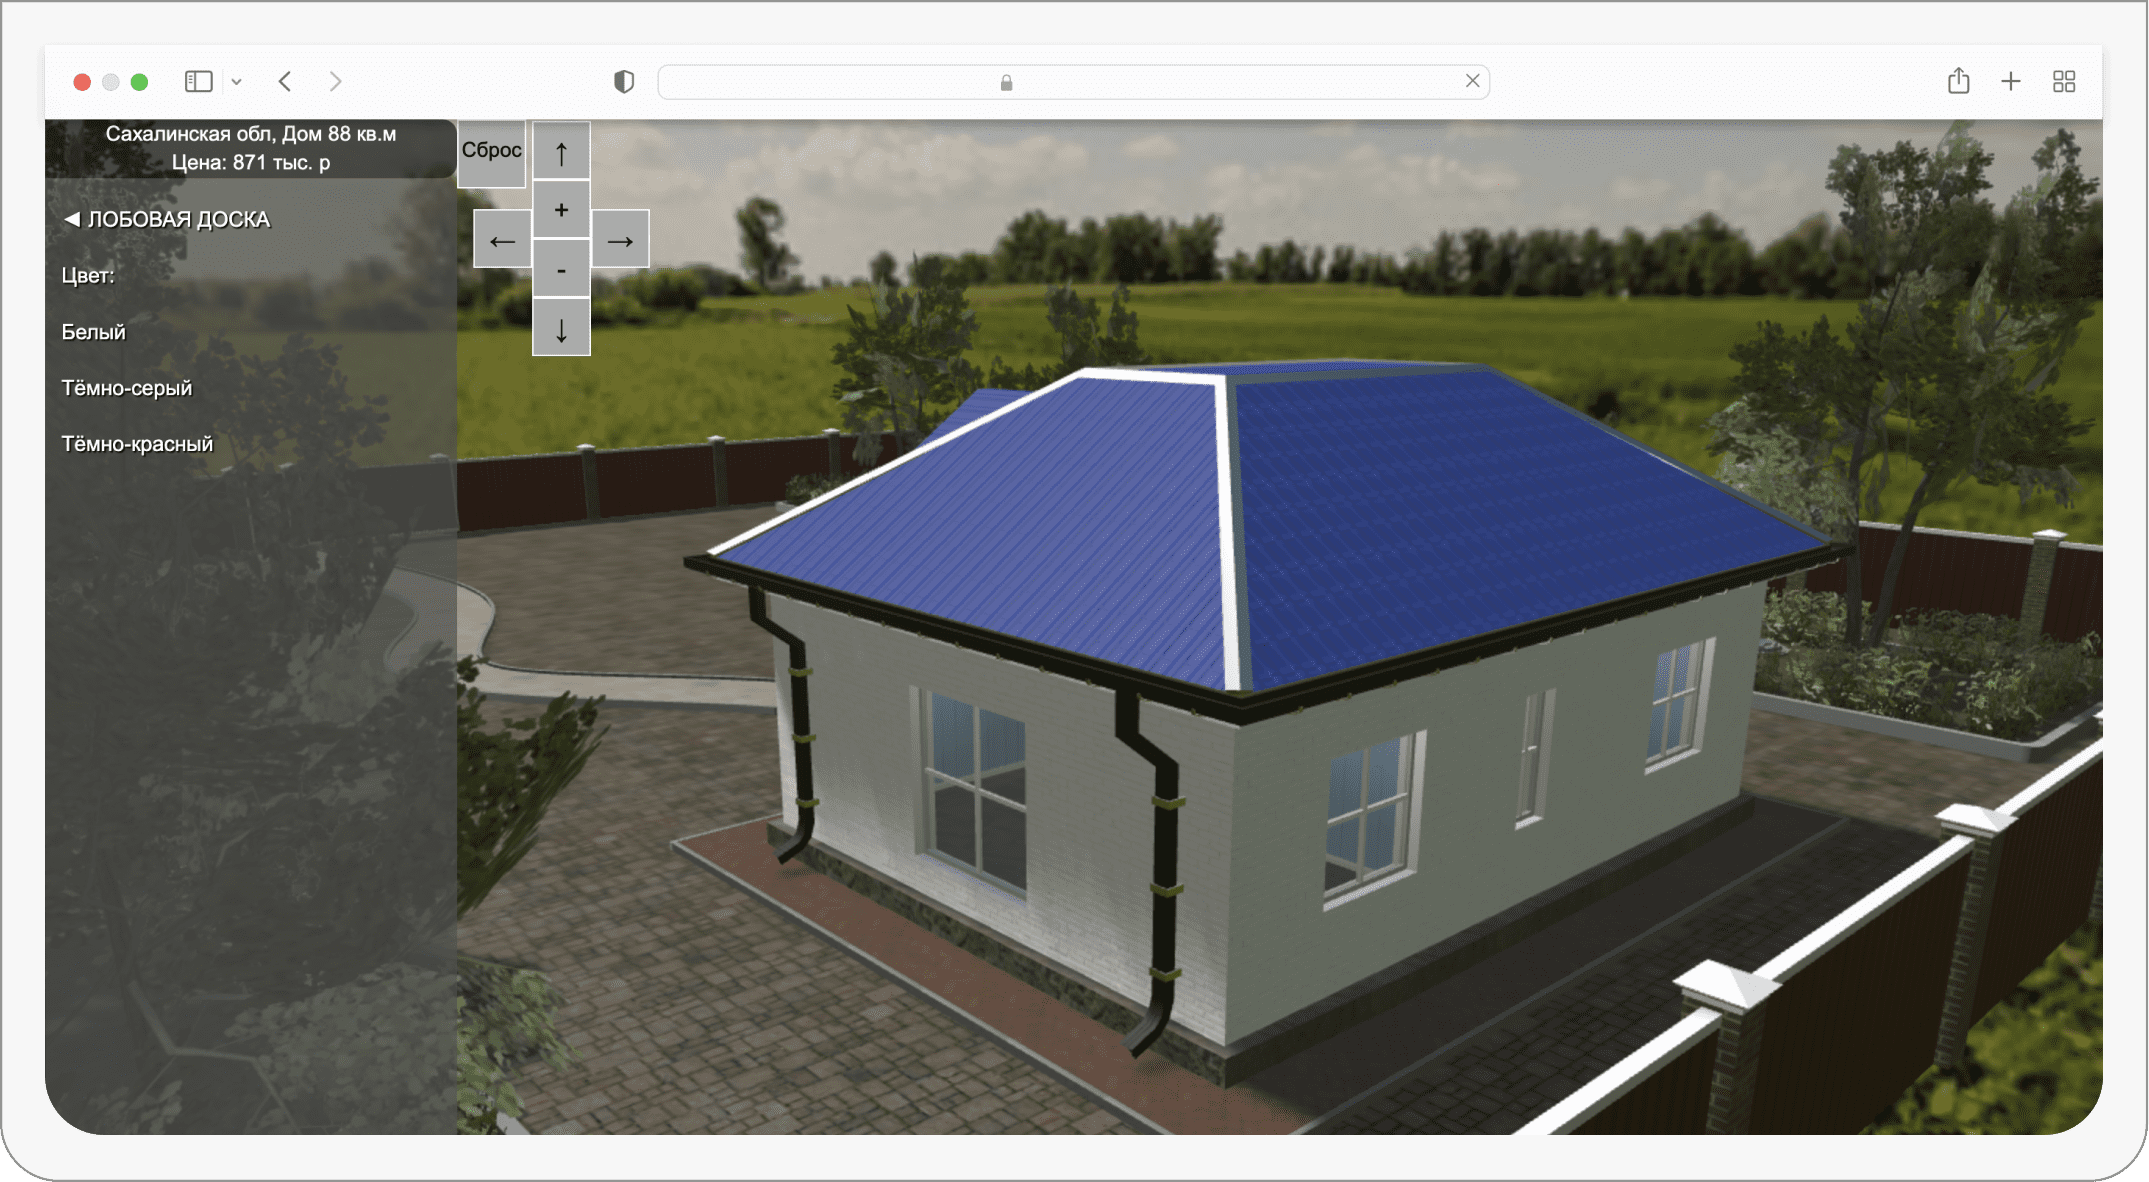 Результат - 3D конфигуратор домов для загородной недвижимости